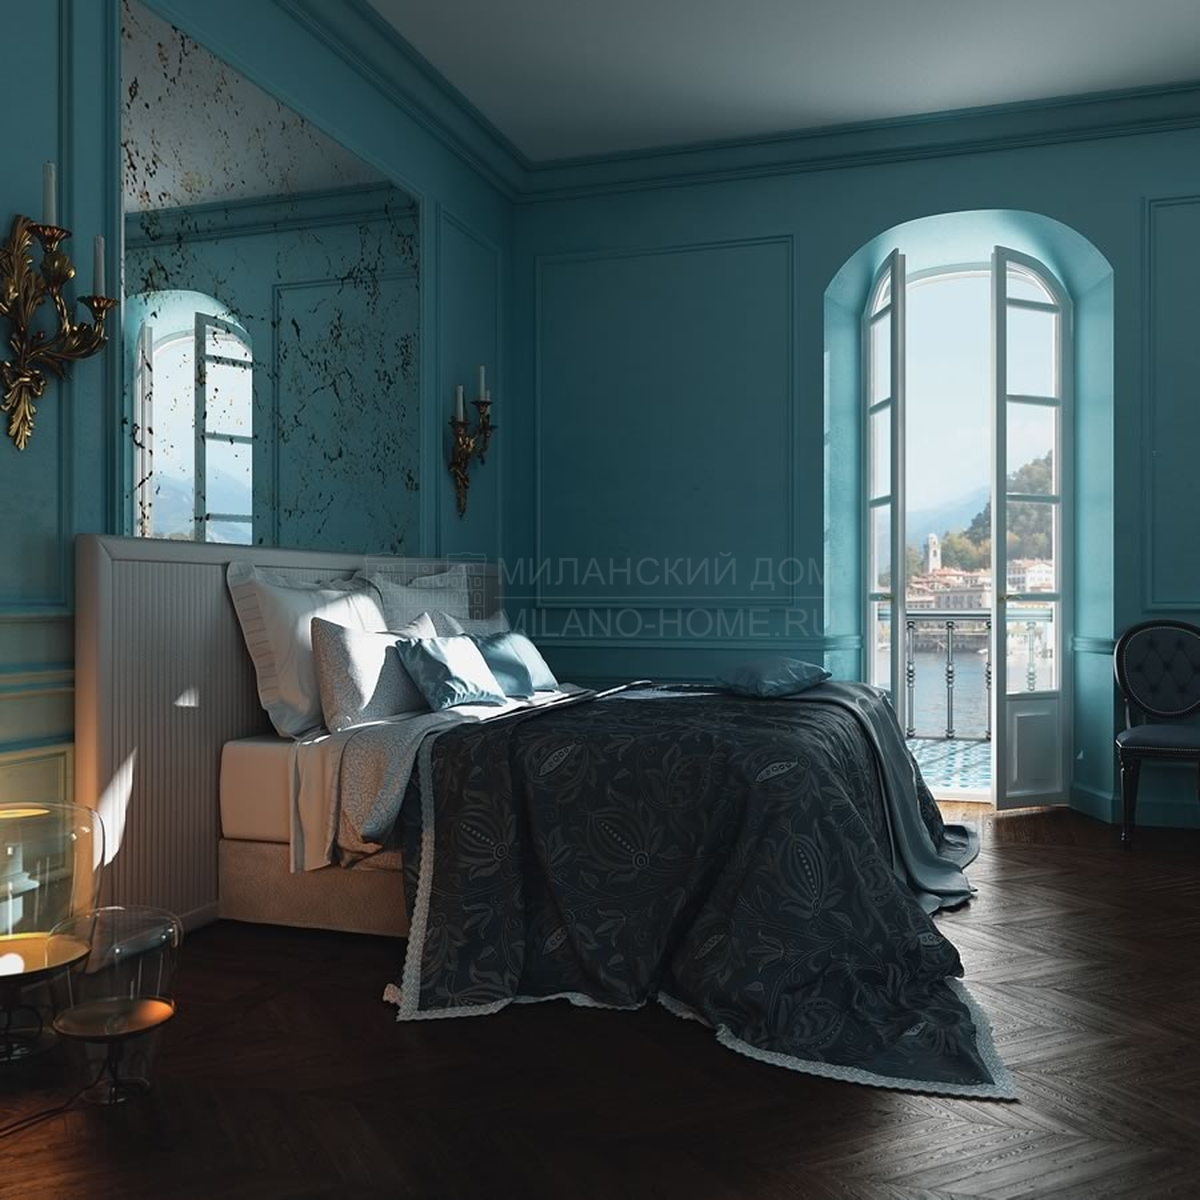 Двуспальная кровать Tosca bed из Италии фабрики ASNAGHI / INEDITO